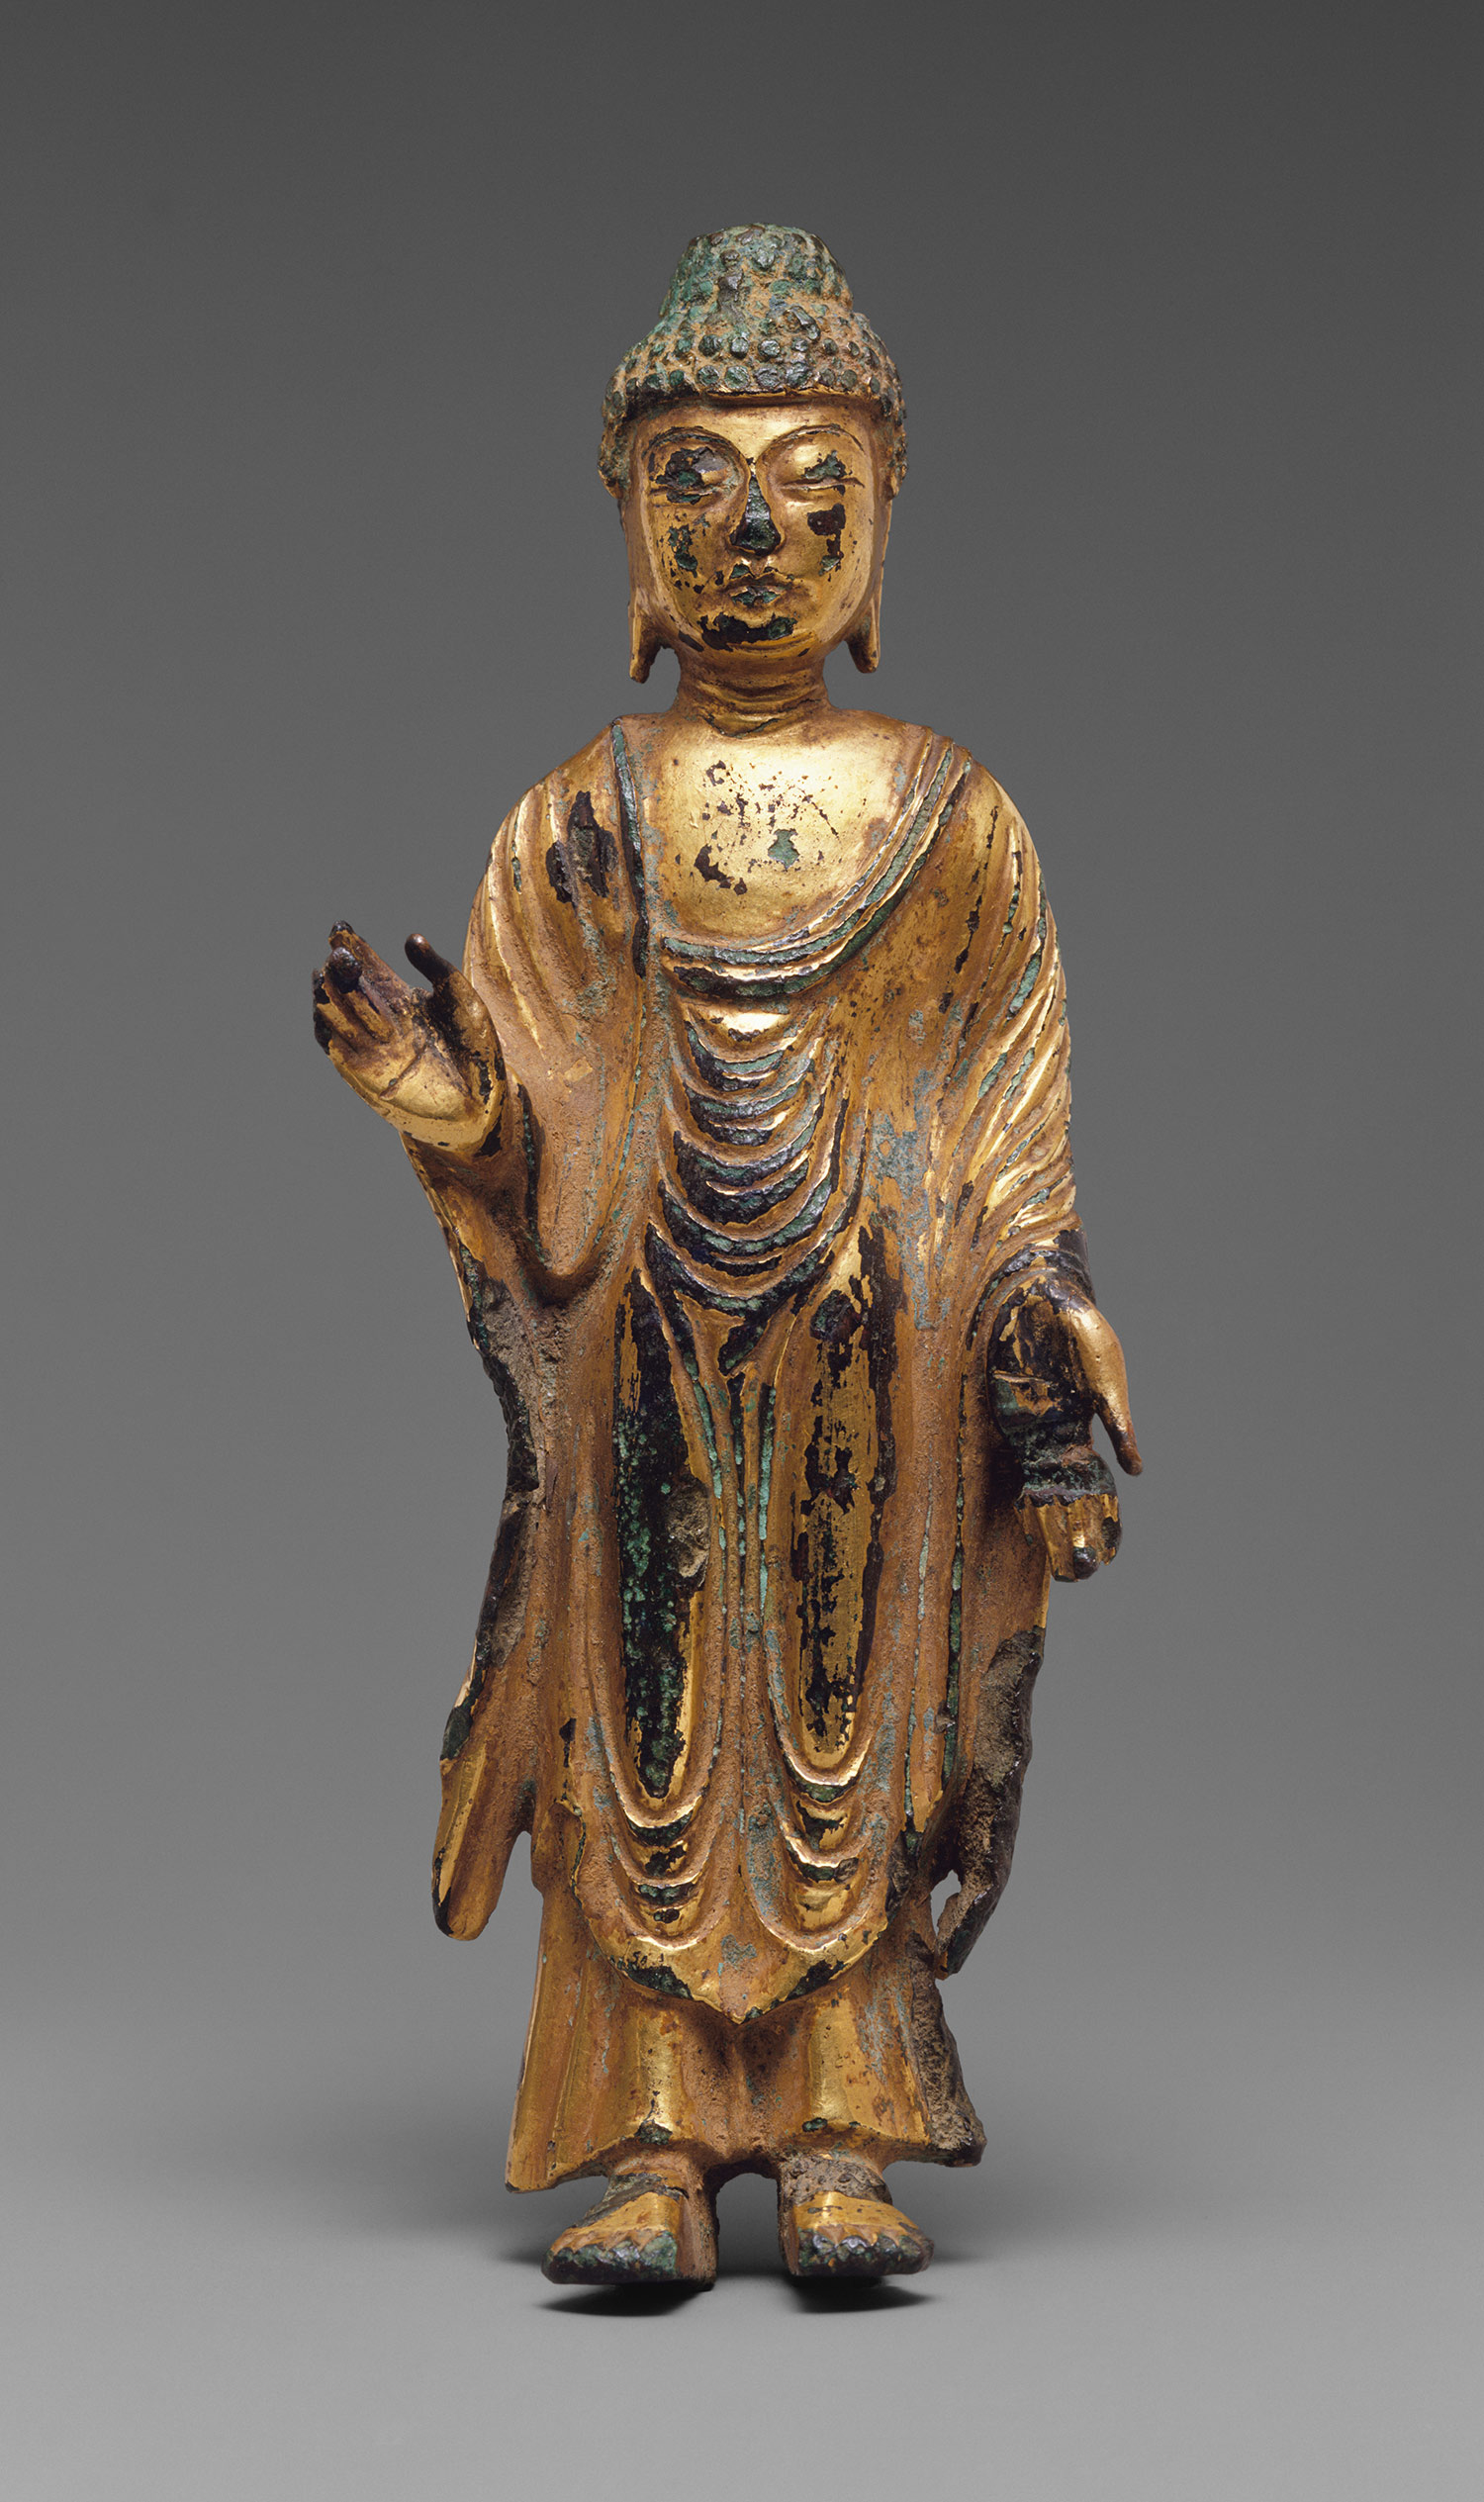 buddhist sculptures